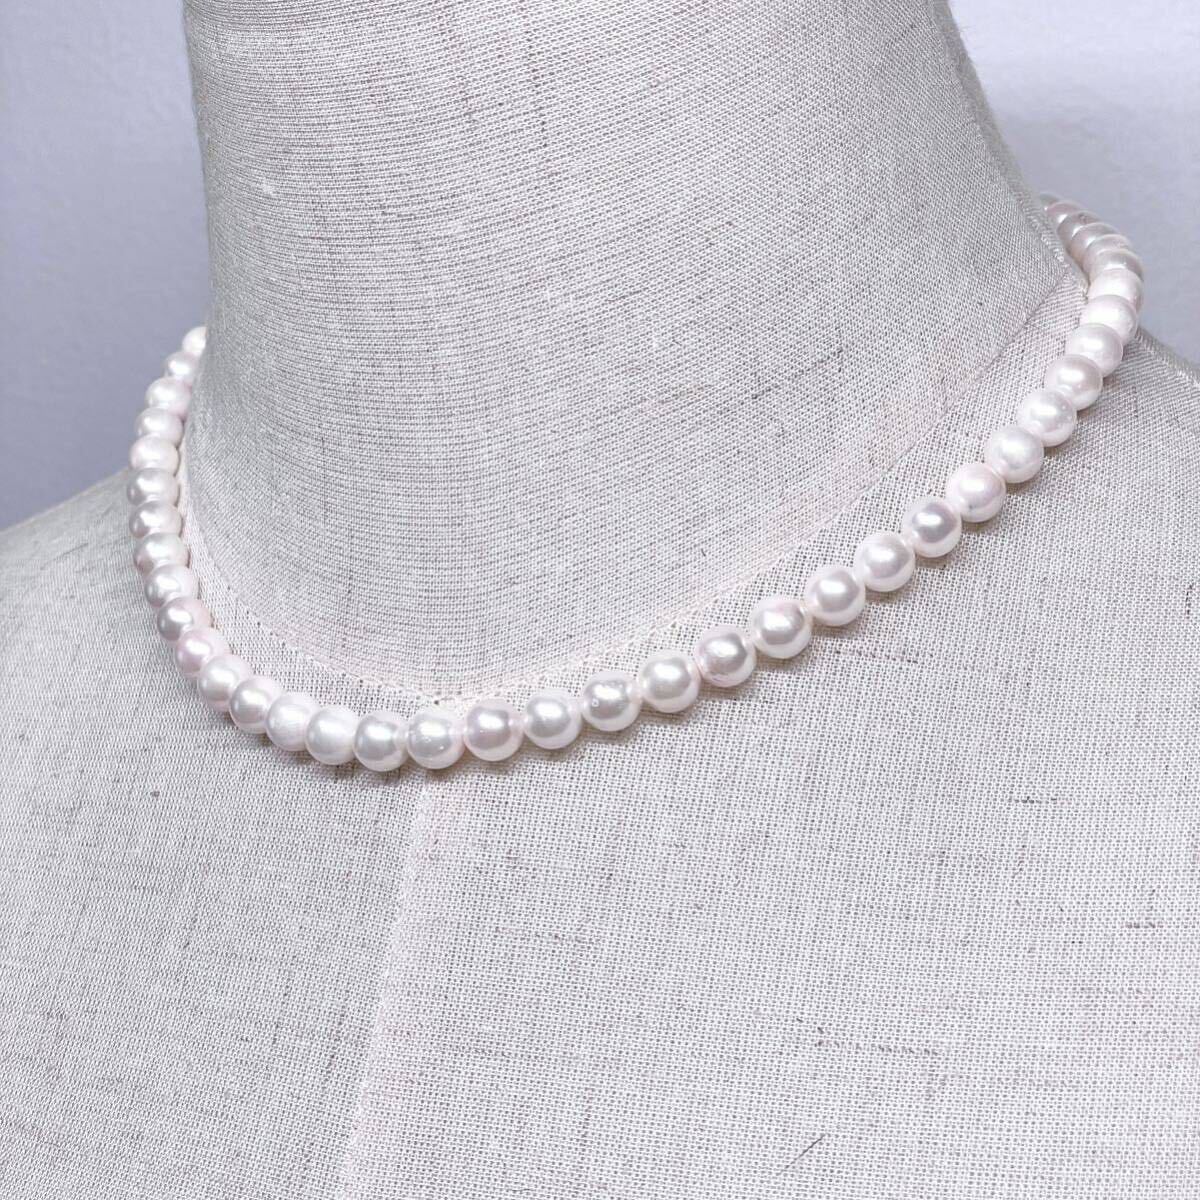 テリ強 美品 アコヤ真珠 ネックレス 7.0-7.5mm アコヤパール ラウンド ホワイトピンク系 pearl necklace jewelry silver刻印の画像4